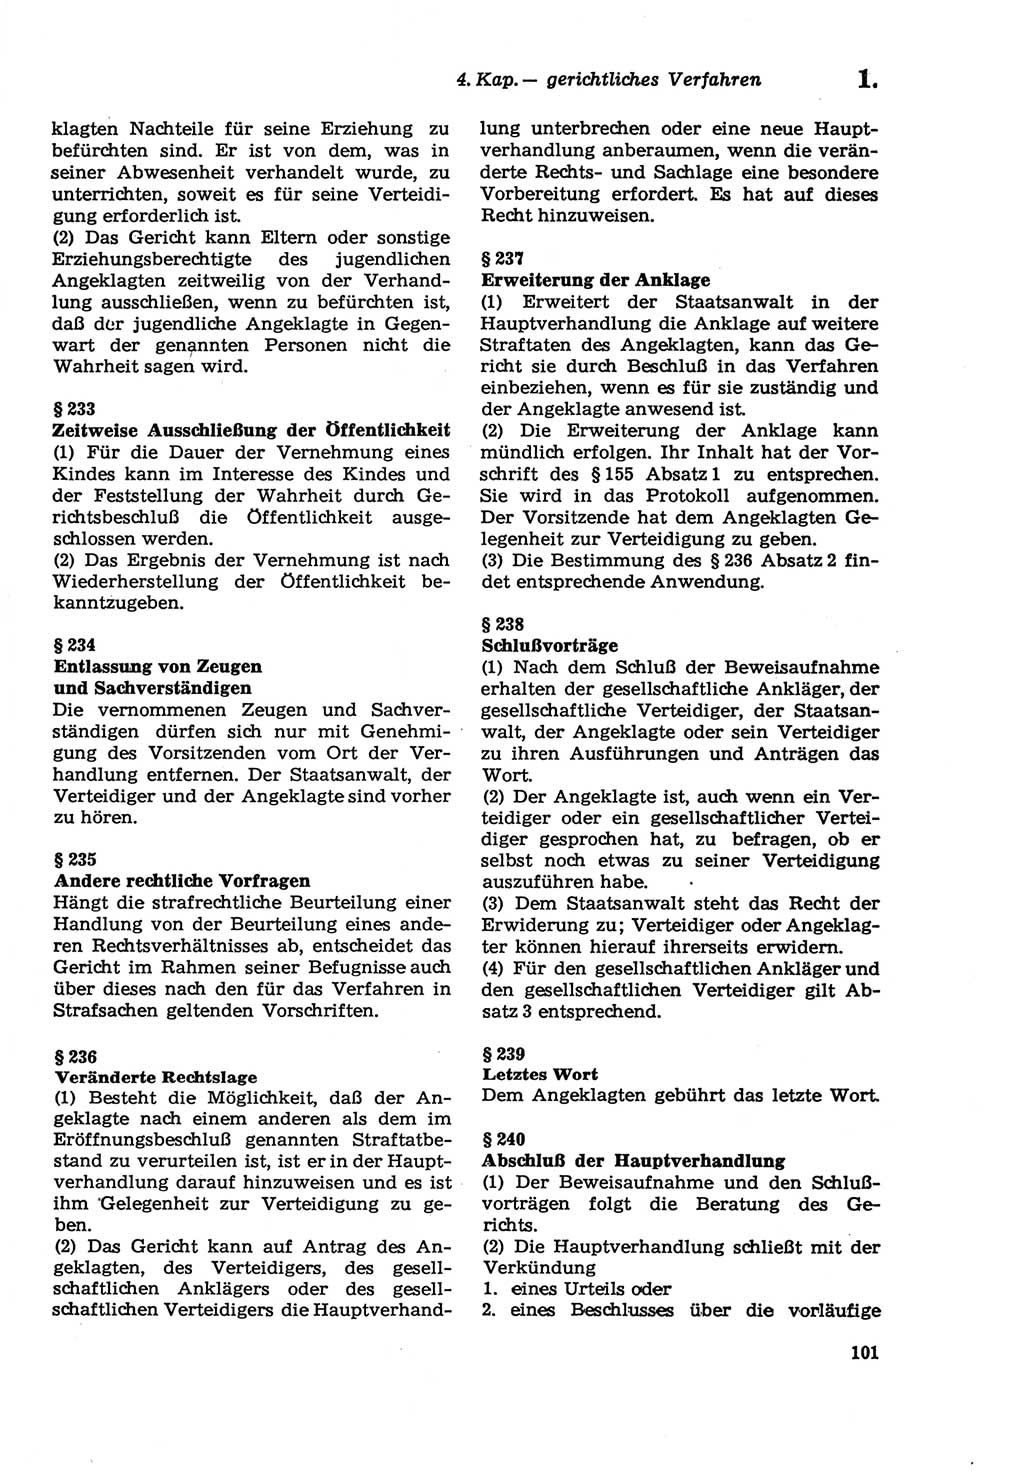 Strafprozeßordnung (StPO) der Deutschen Demokratischen Republik (DDR) sowie angrenzende Gesetze und Bestimmungen 1979, Seite 101 (StPO DDR Ges. Best. 1979, S. 101)